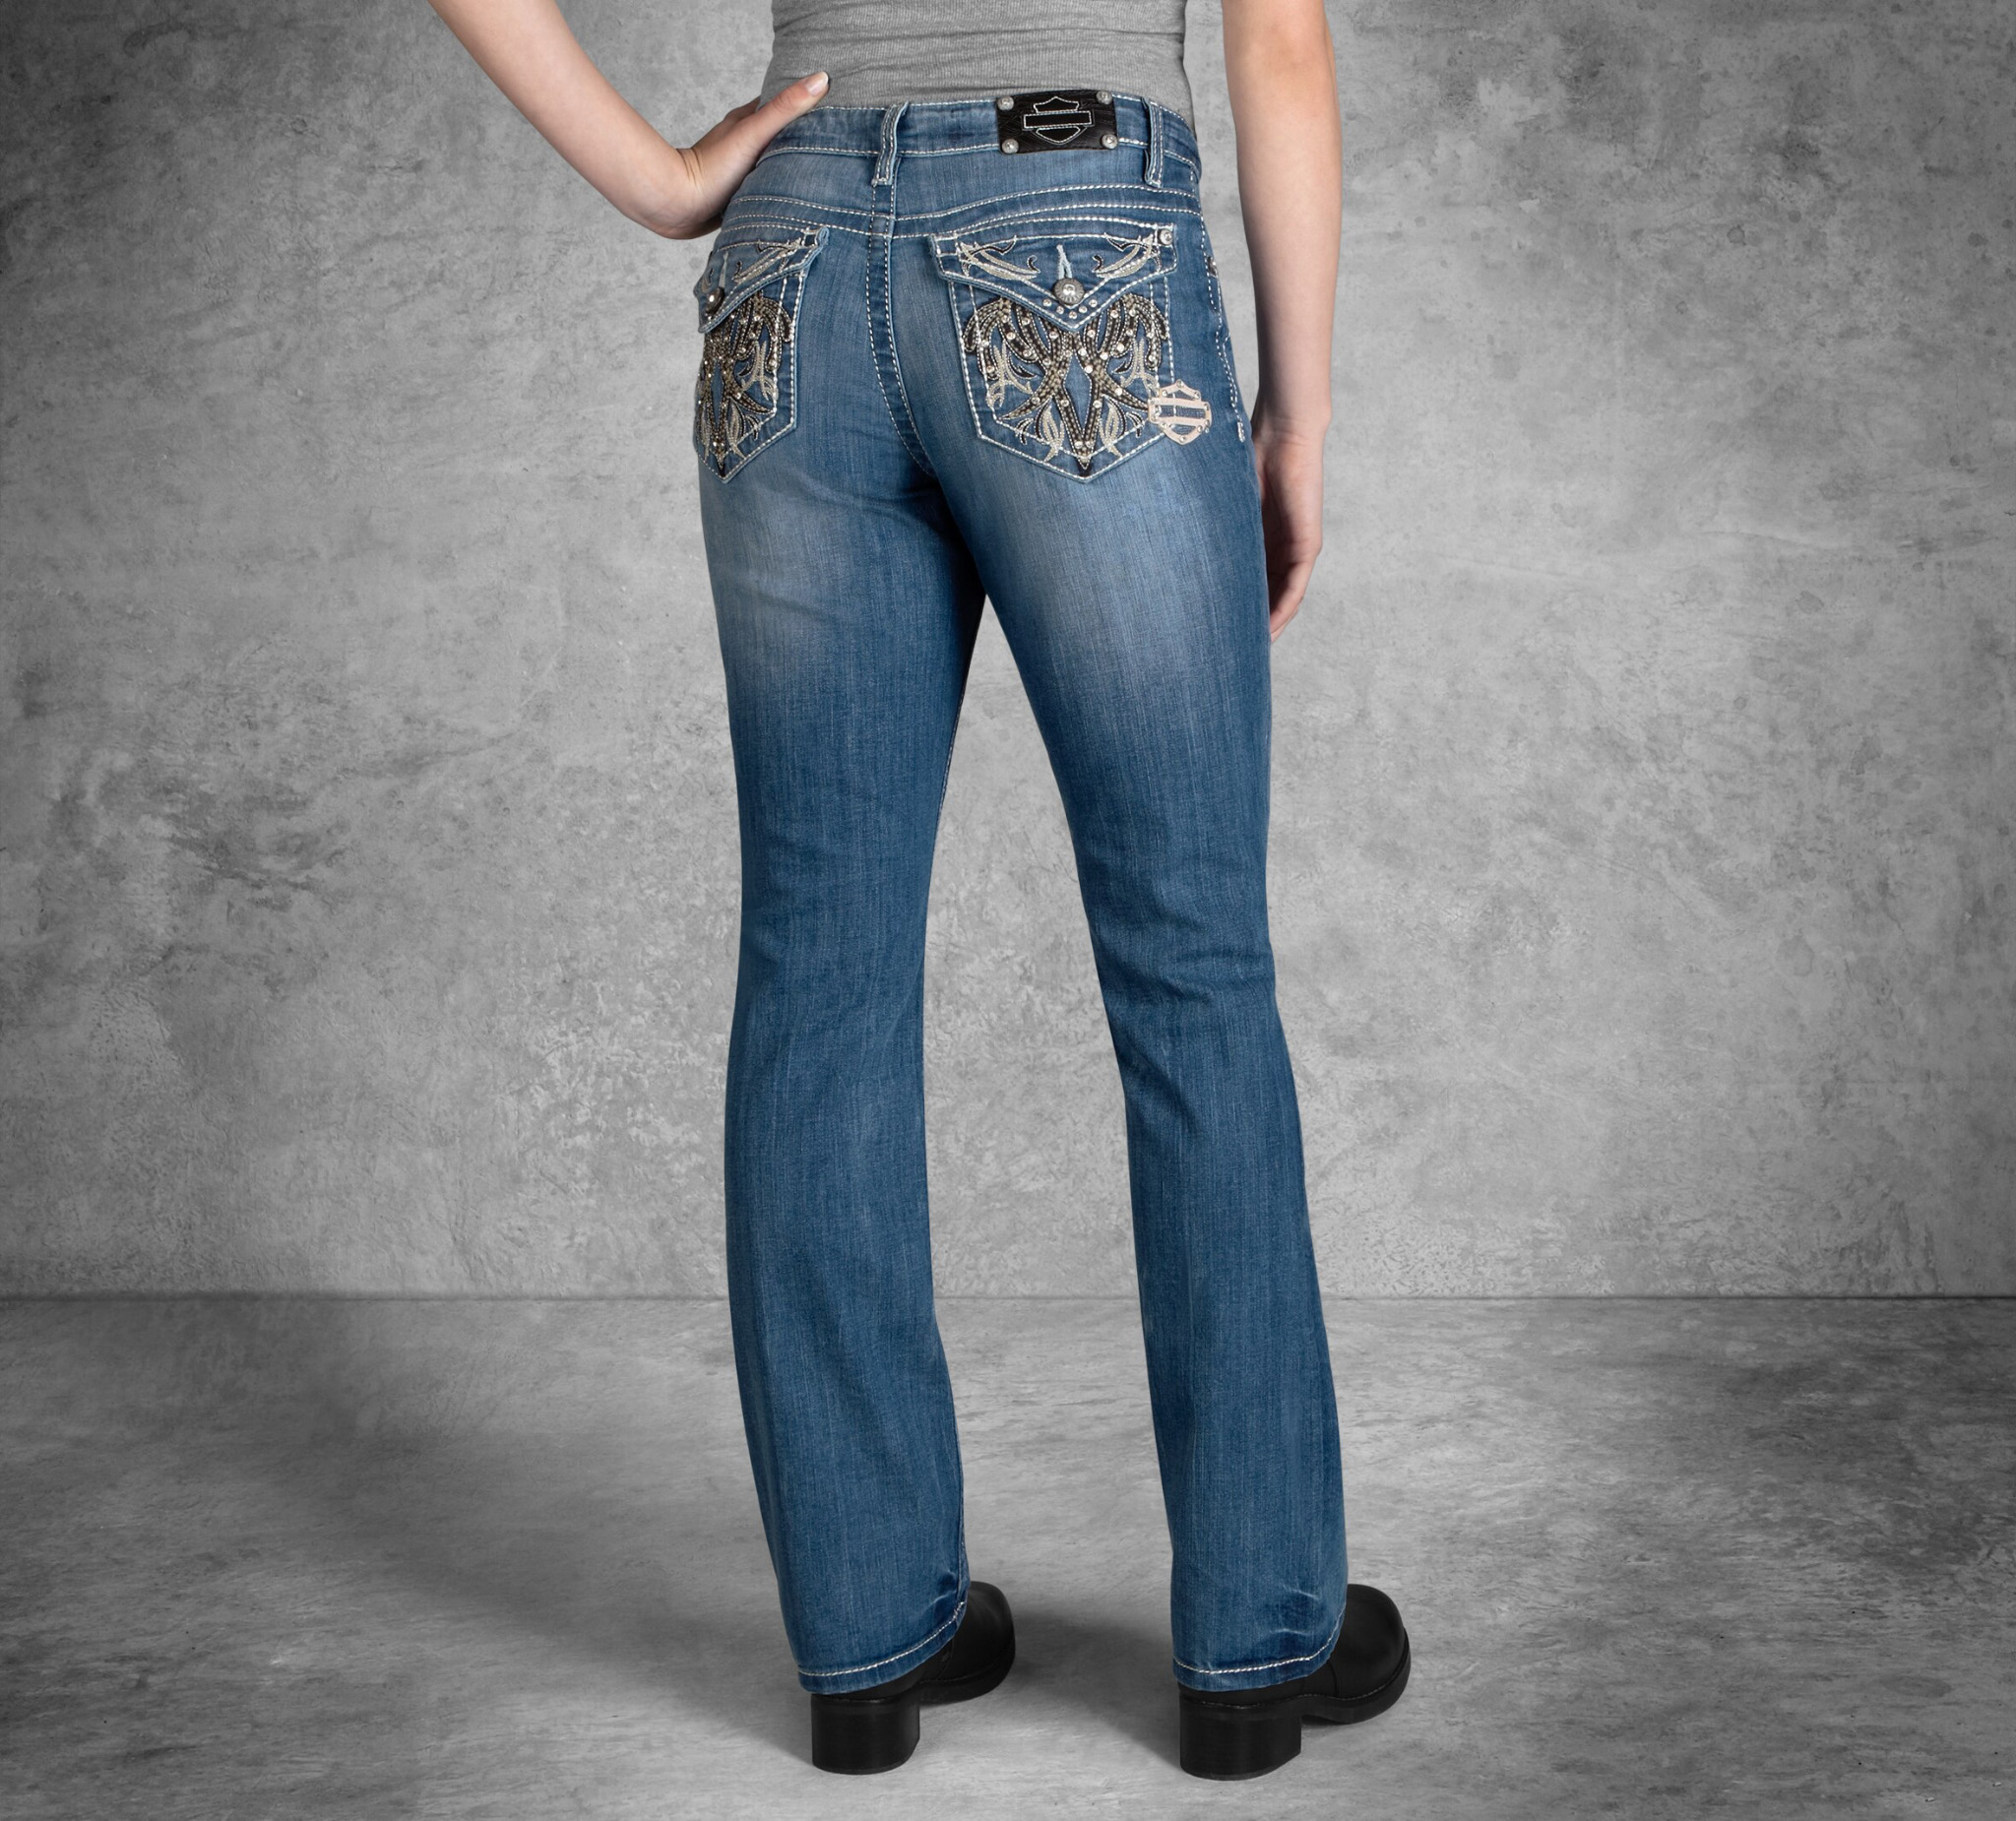 harley davidson jeans price